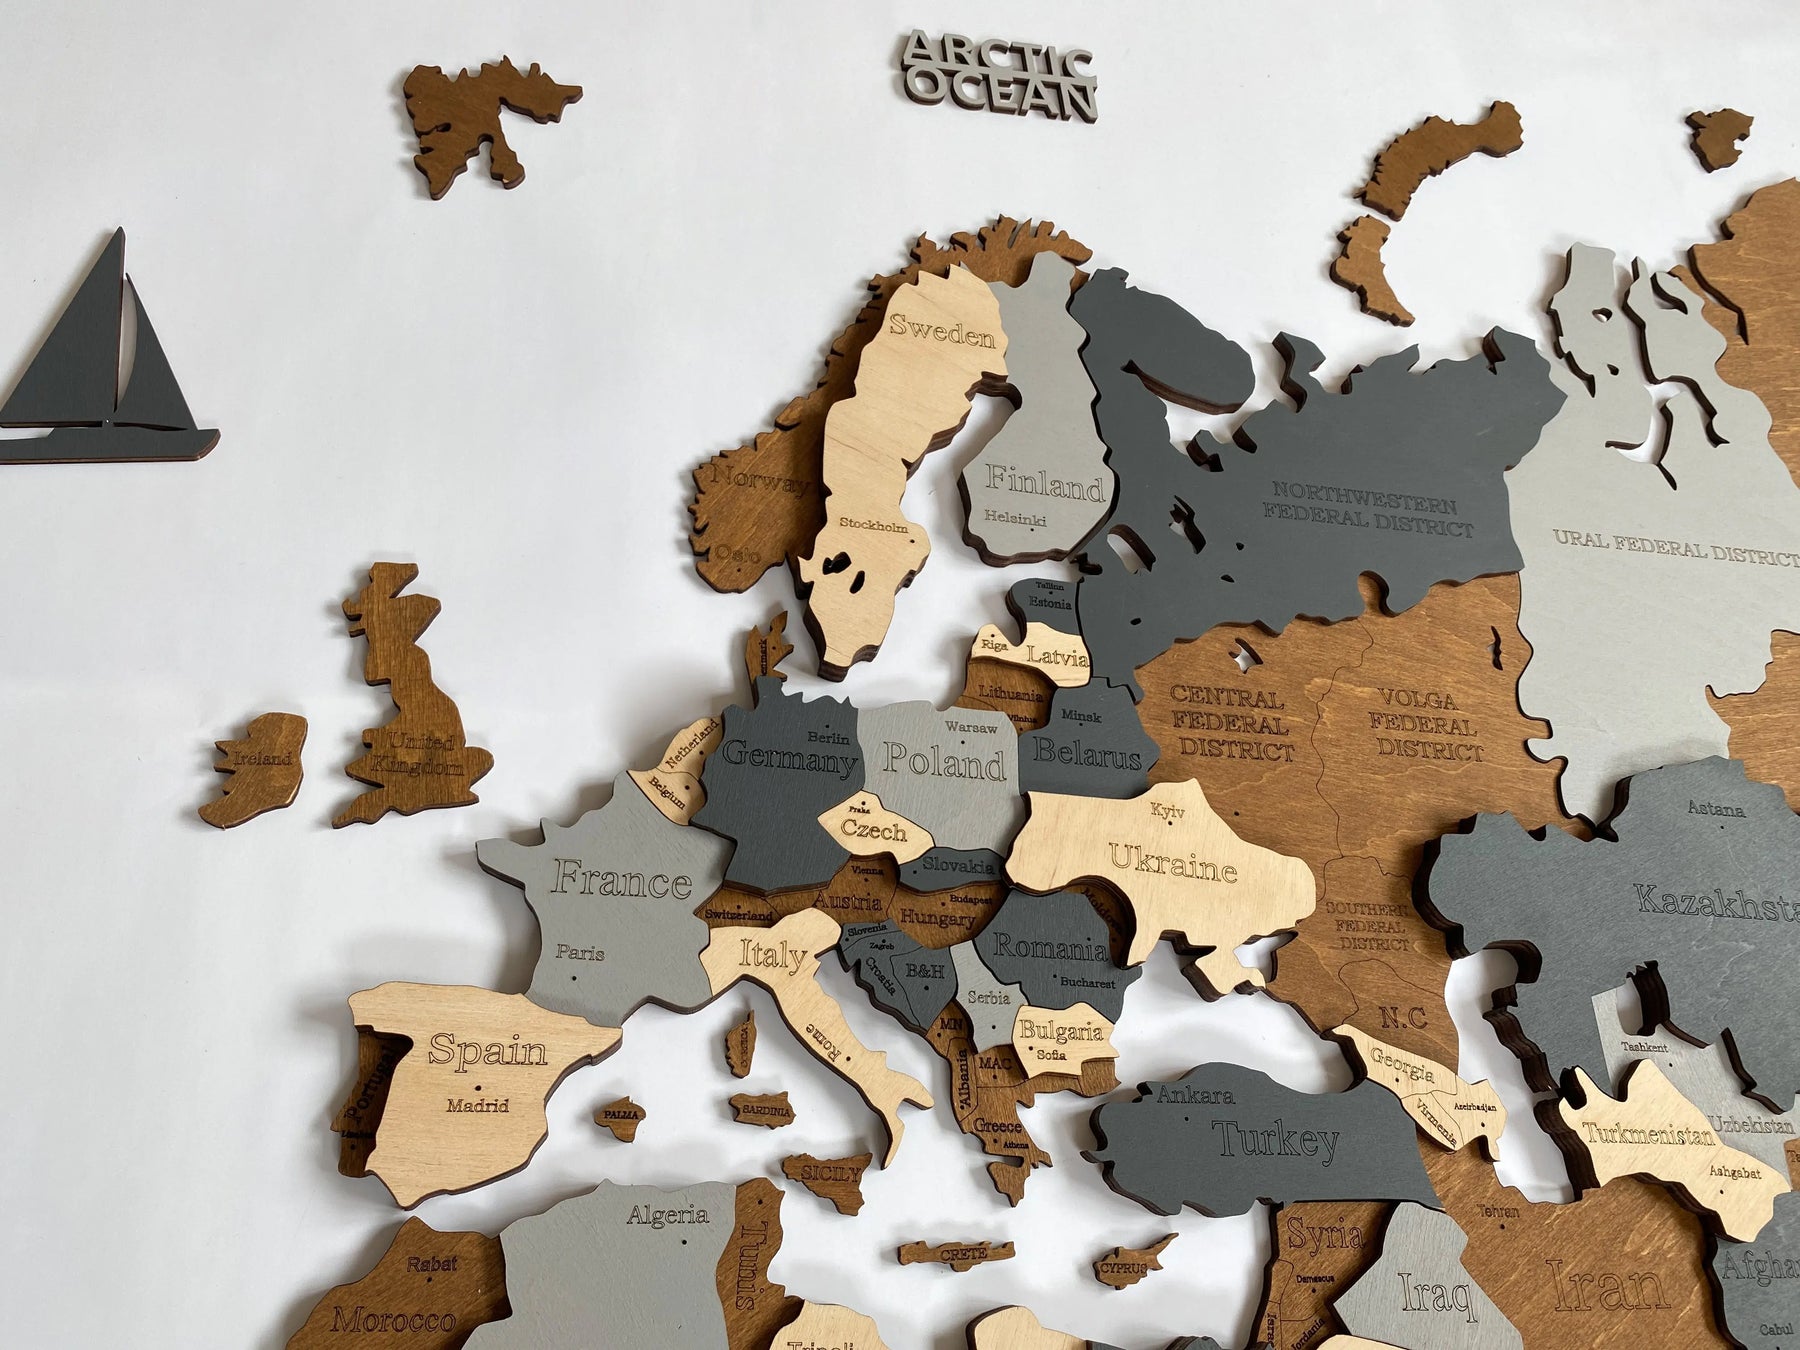 Carte 3D du monde en bois - L120 Traveler (120x60 cm) – magnifique  décoration murale - Achat & prix